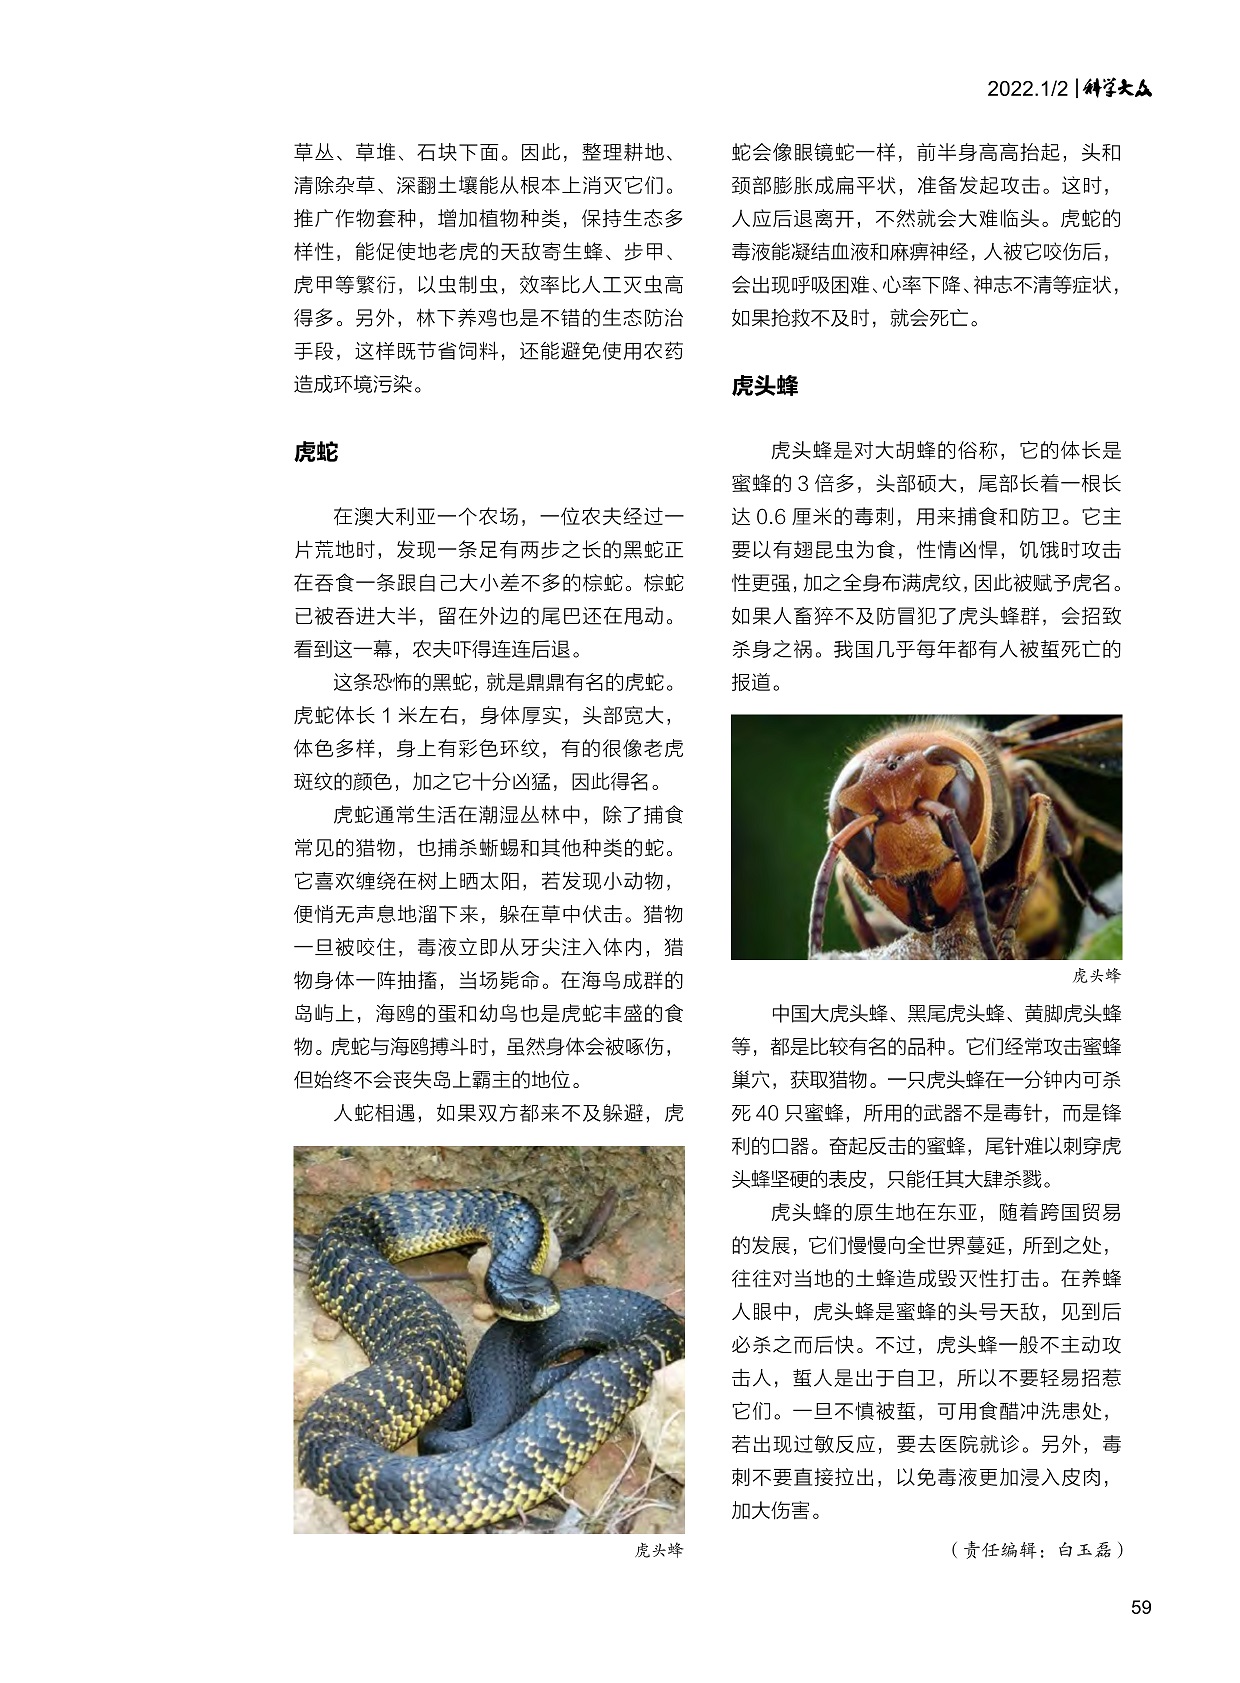 虎蛇通常生活在潮湿丛林中,虎头蜂的原生地在东亚